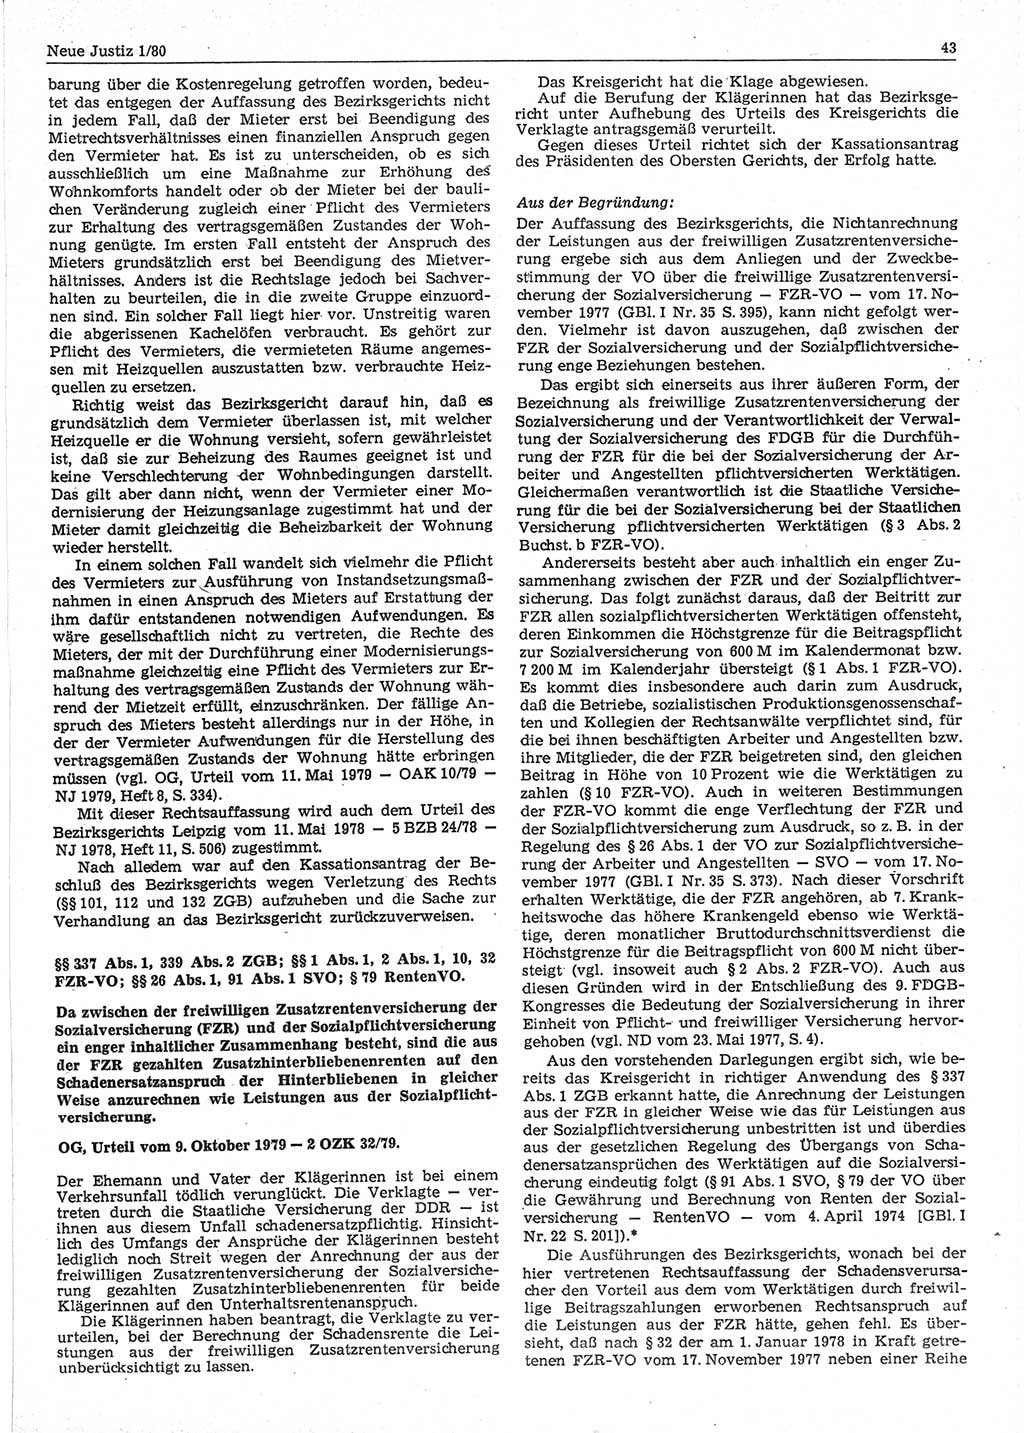 Neue Justiz (NJ), Zeitschrift für sozialistisches Recht und Gesetzlichkeit [Deutsche Demokratische Republik (DDR)], 34. Jahrgang 1980, Seite 43 (NJ DDR 1980, S. 43)